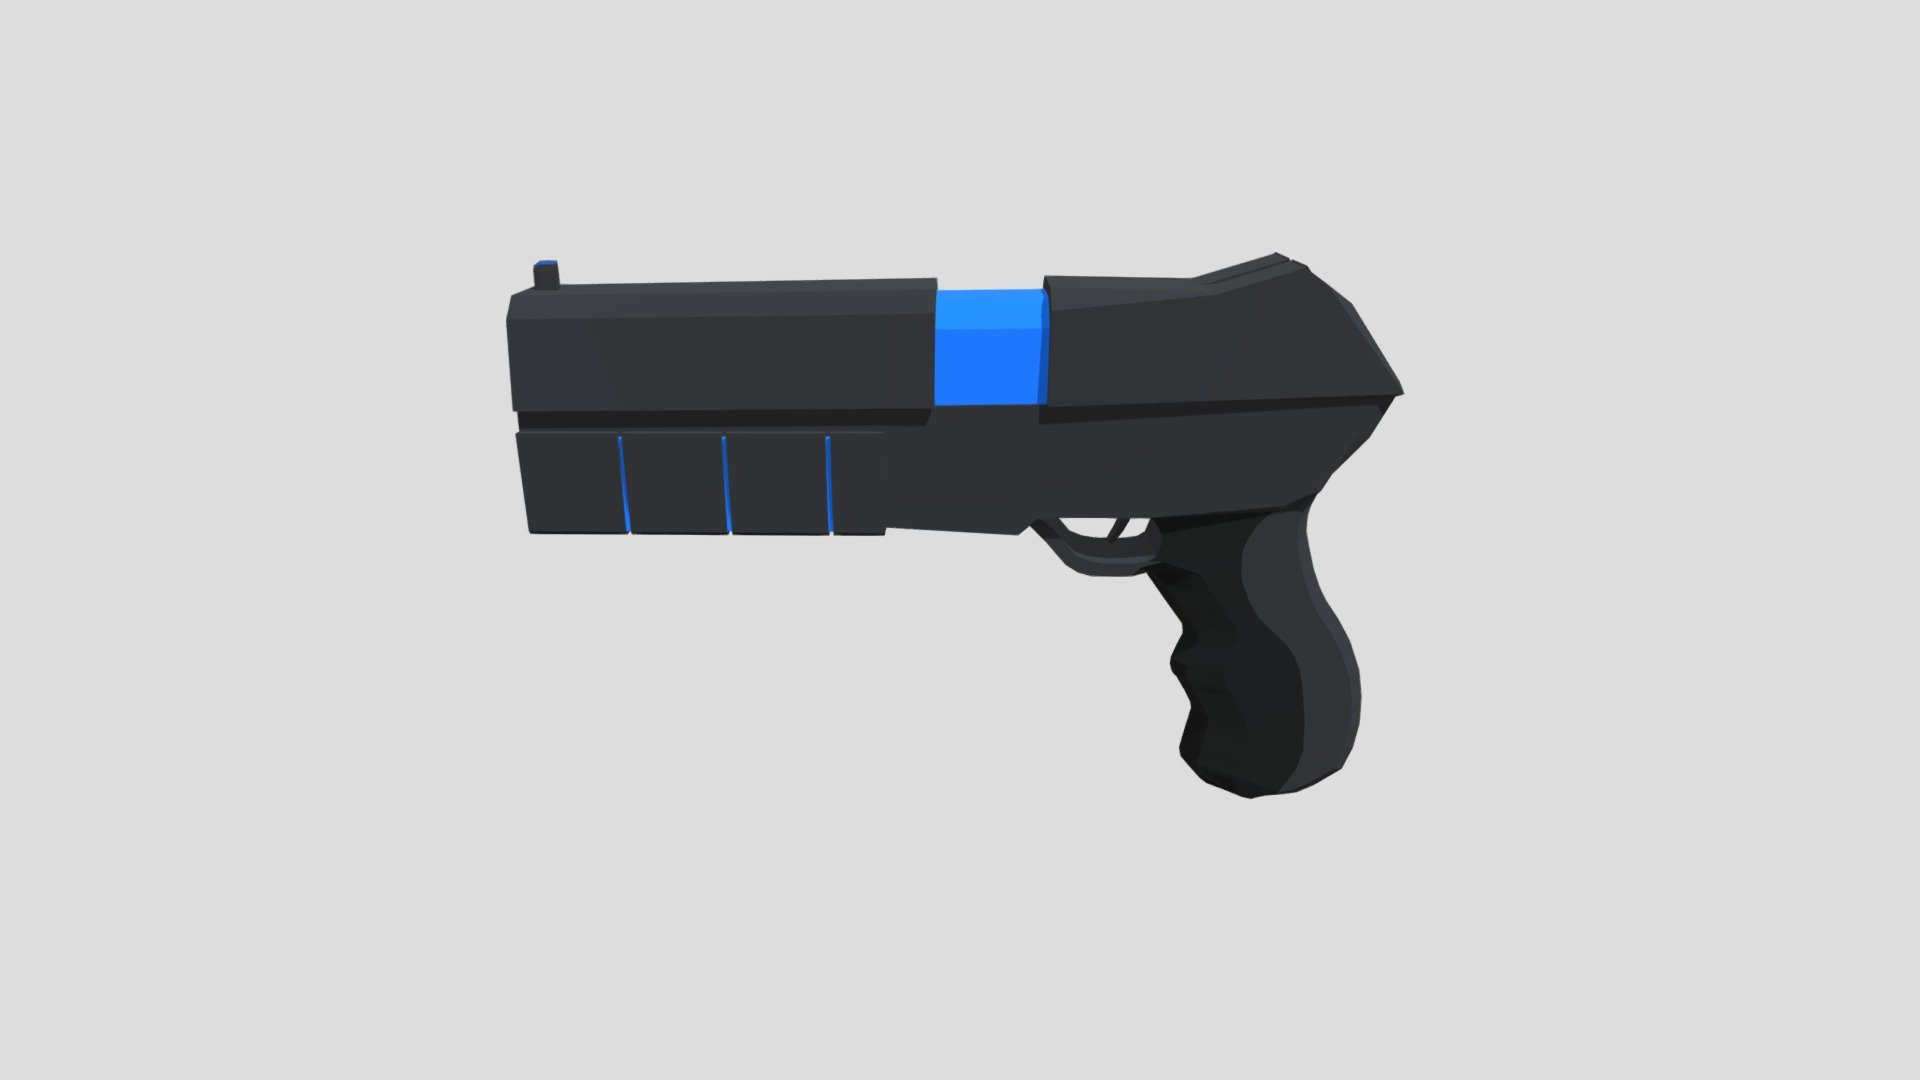 Plasma Pistol - 3D model by MacFur [24821b7] - Sketchfab